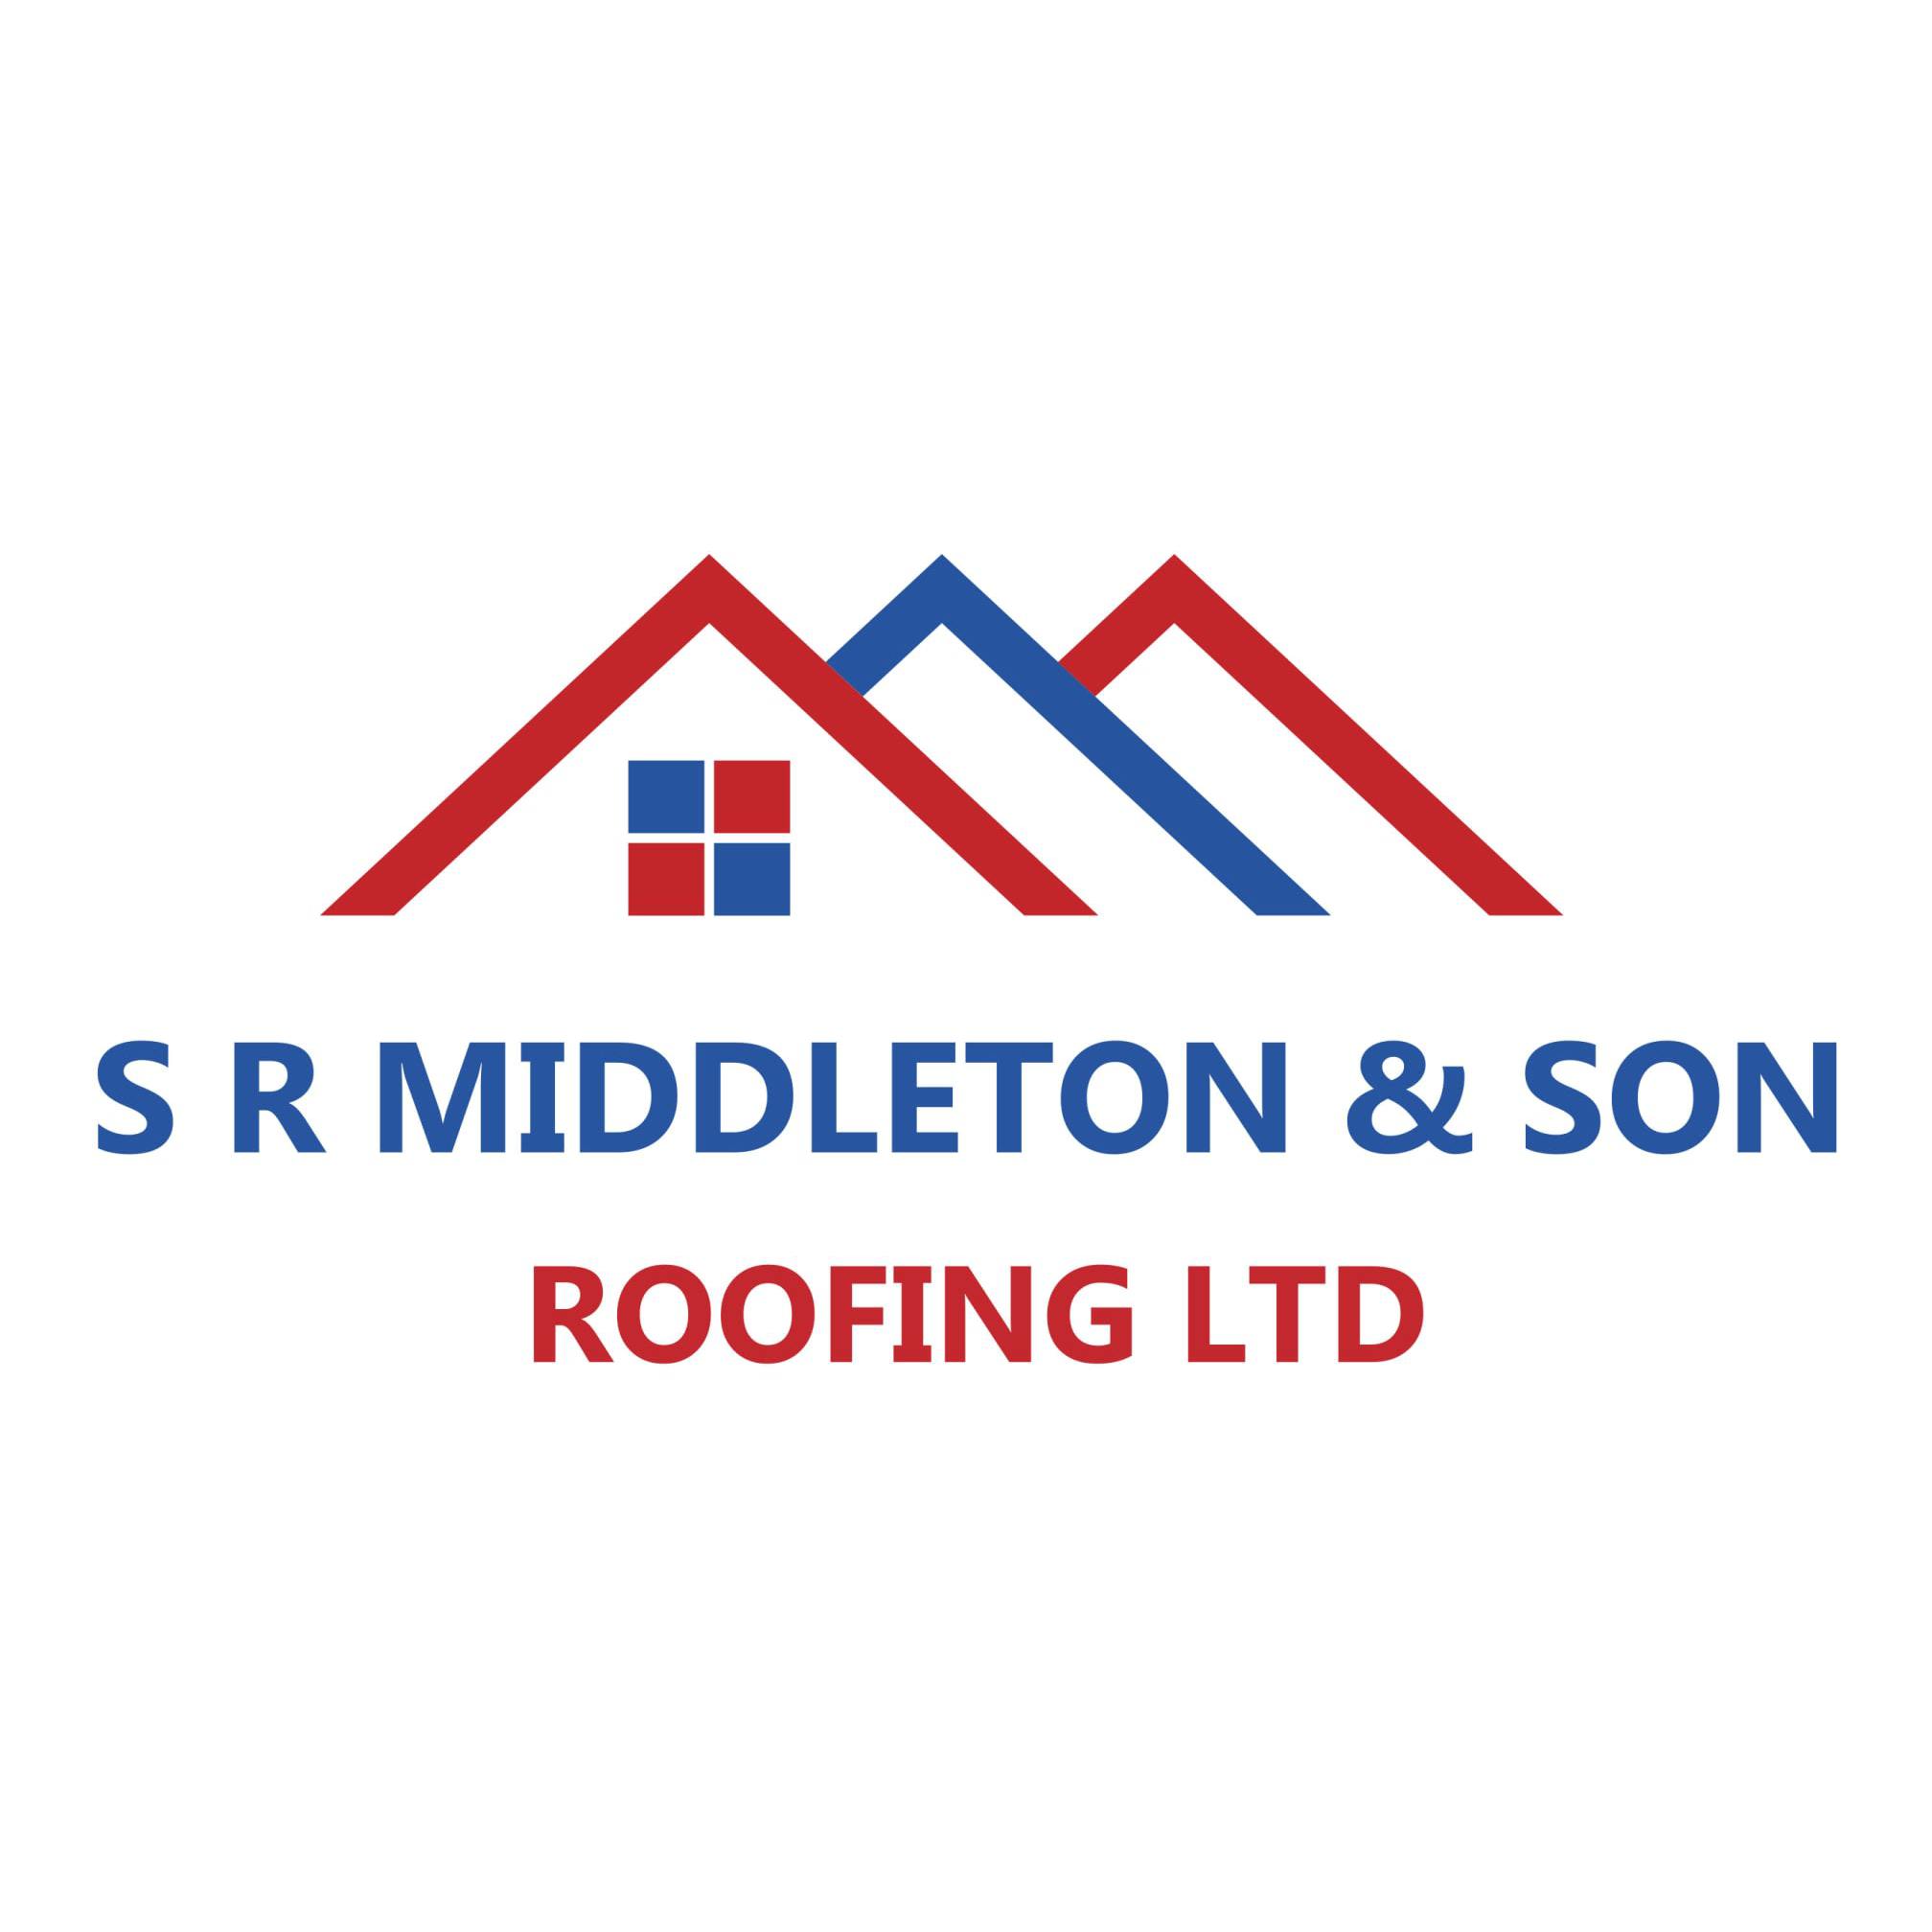 S.R Middleton & Son Roofing Ltd Logo